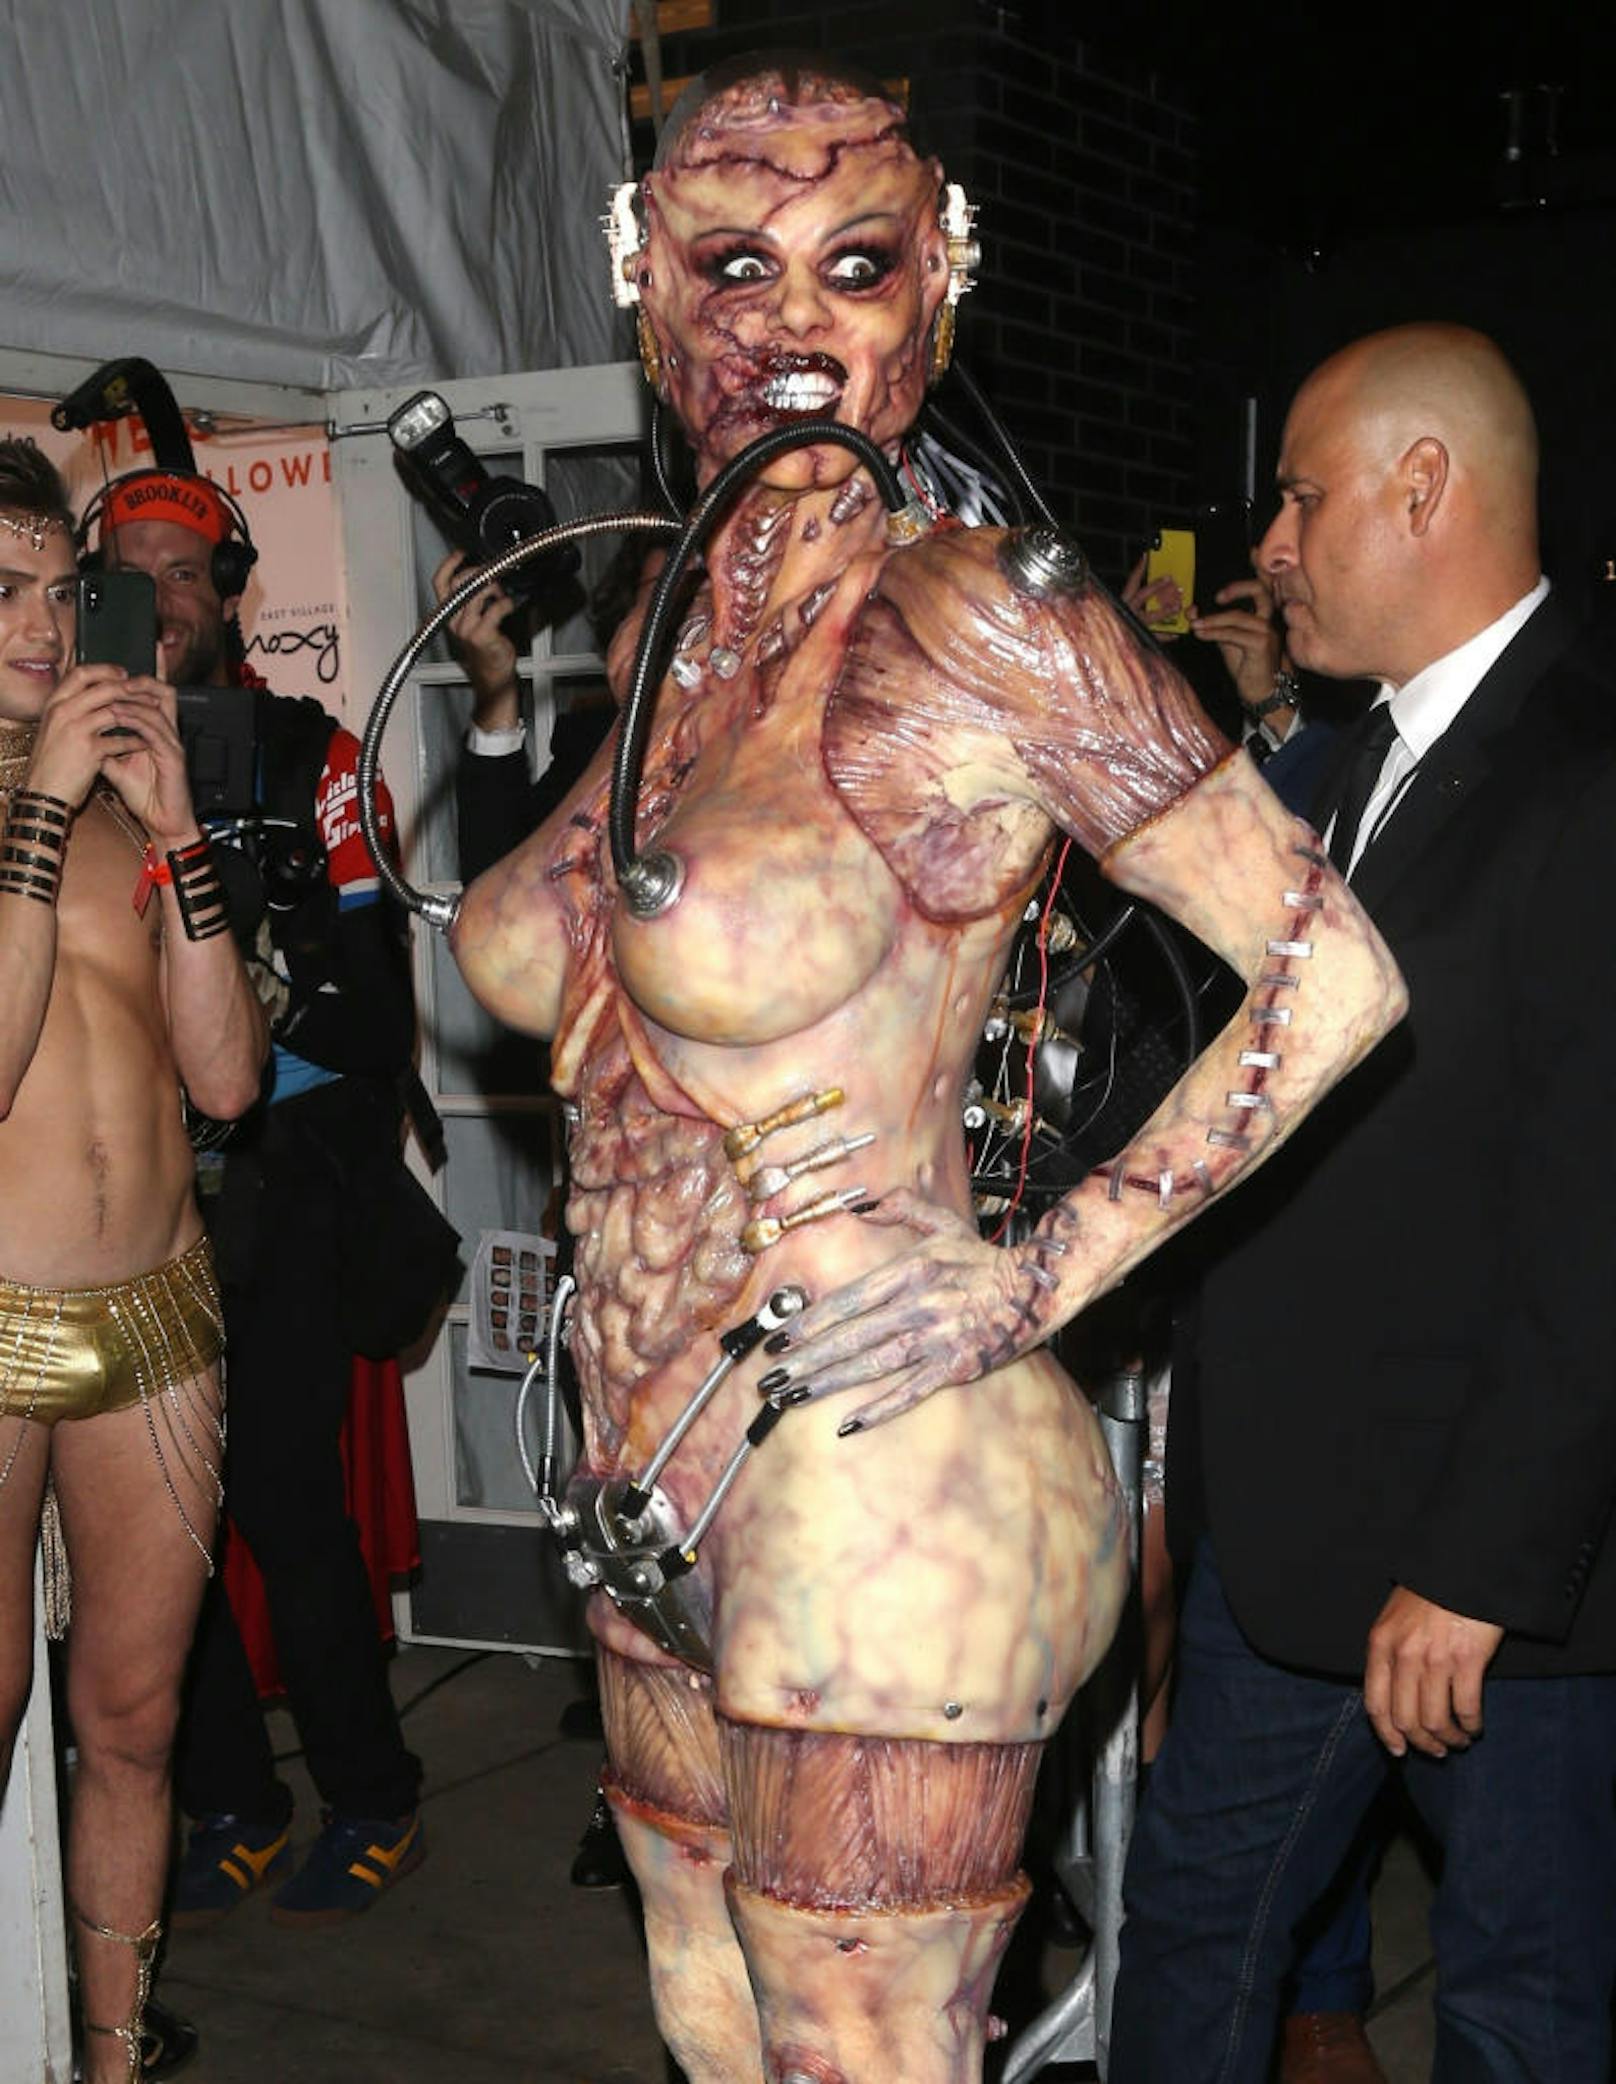 01.11.2019: Metall an den Brustwarzen und als Mini-Bikini. Heidi Klum verzichtet zu Halloween komplett auf Stoff, brauchte trotzdem einen ganzen Tag, um ausgehfertig zu sein. Ihr Kommentar: "Sieht aus wie ein Huhn" <a href="https://www.heute.at/s/heidi-klum-alien-halloween--53337747">Alle Infos, Videos und Fotos gibt's HIER</a>